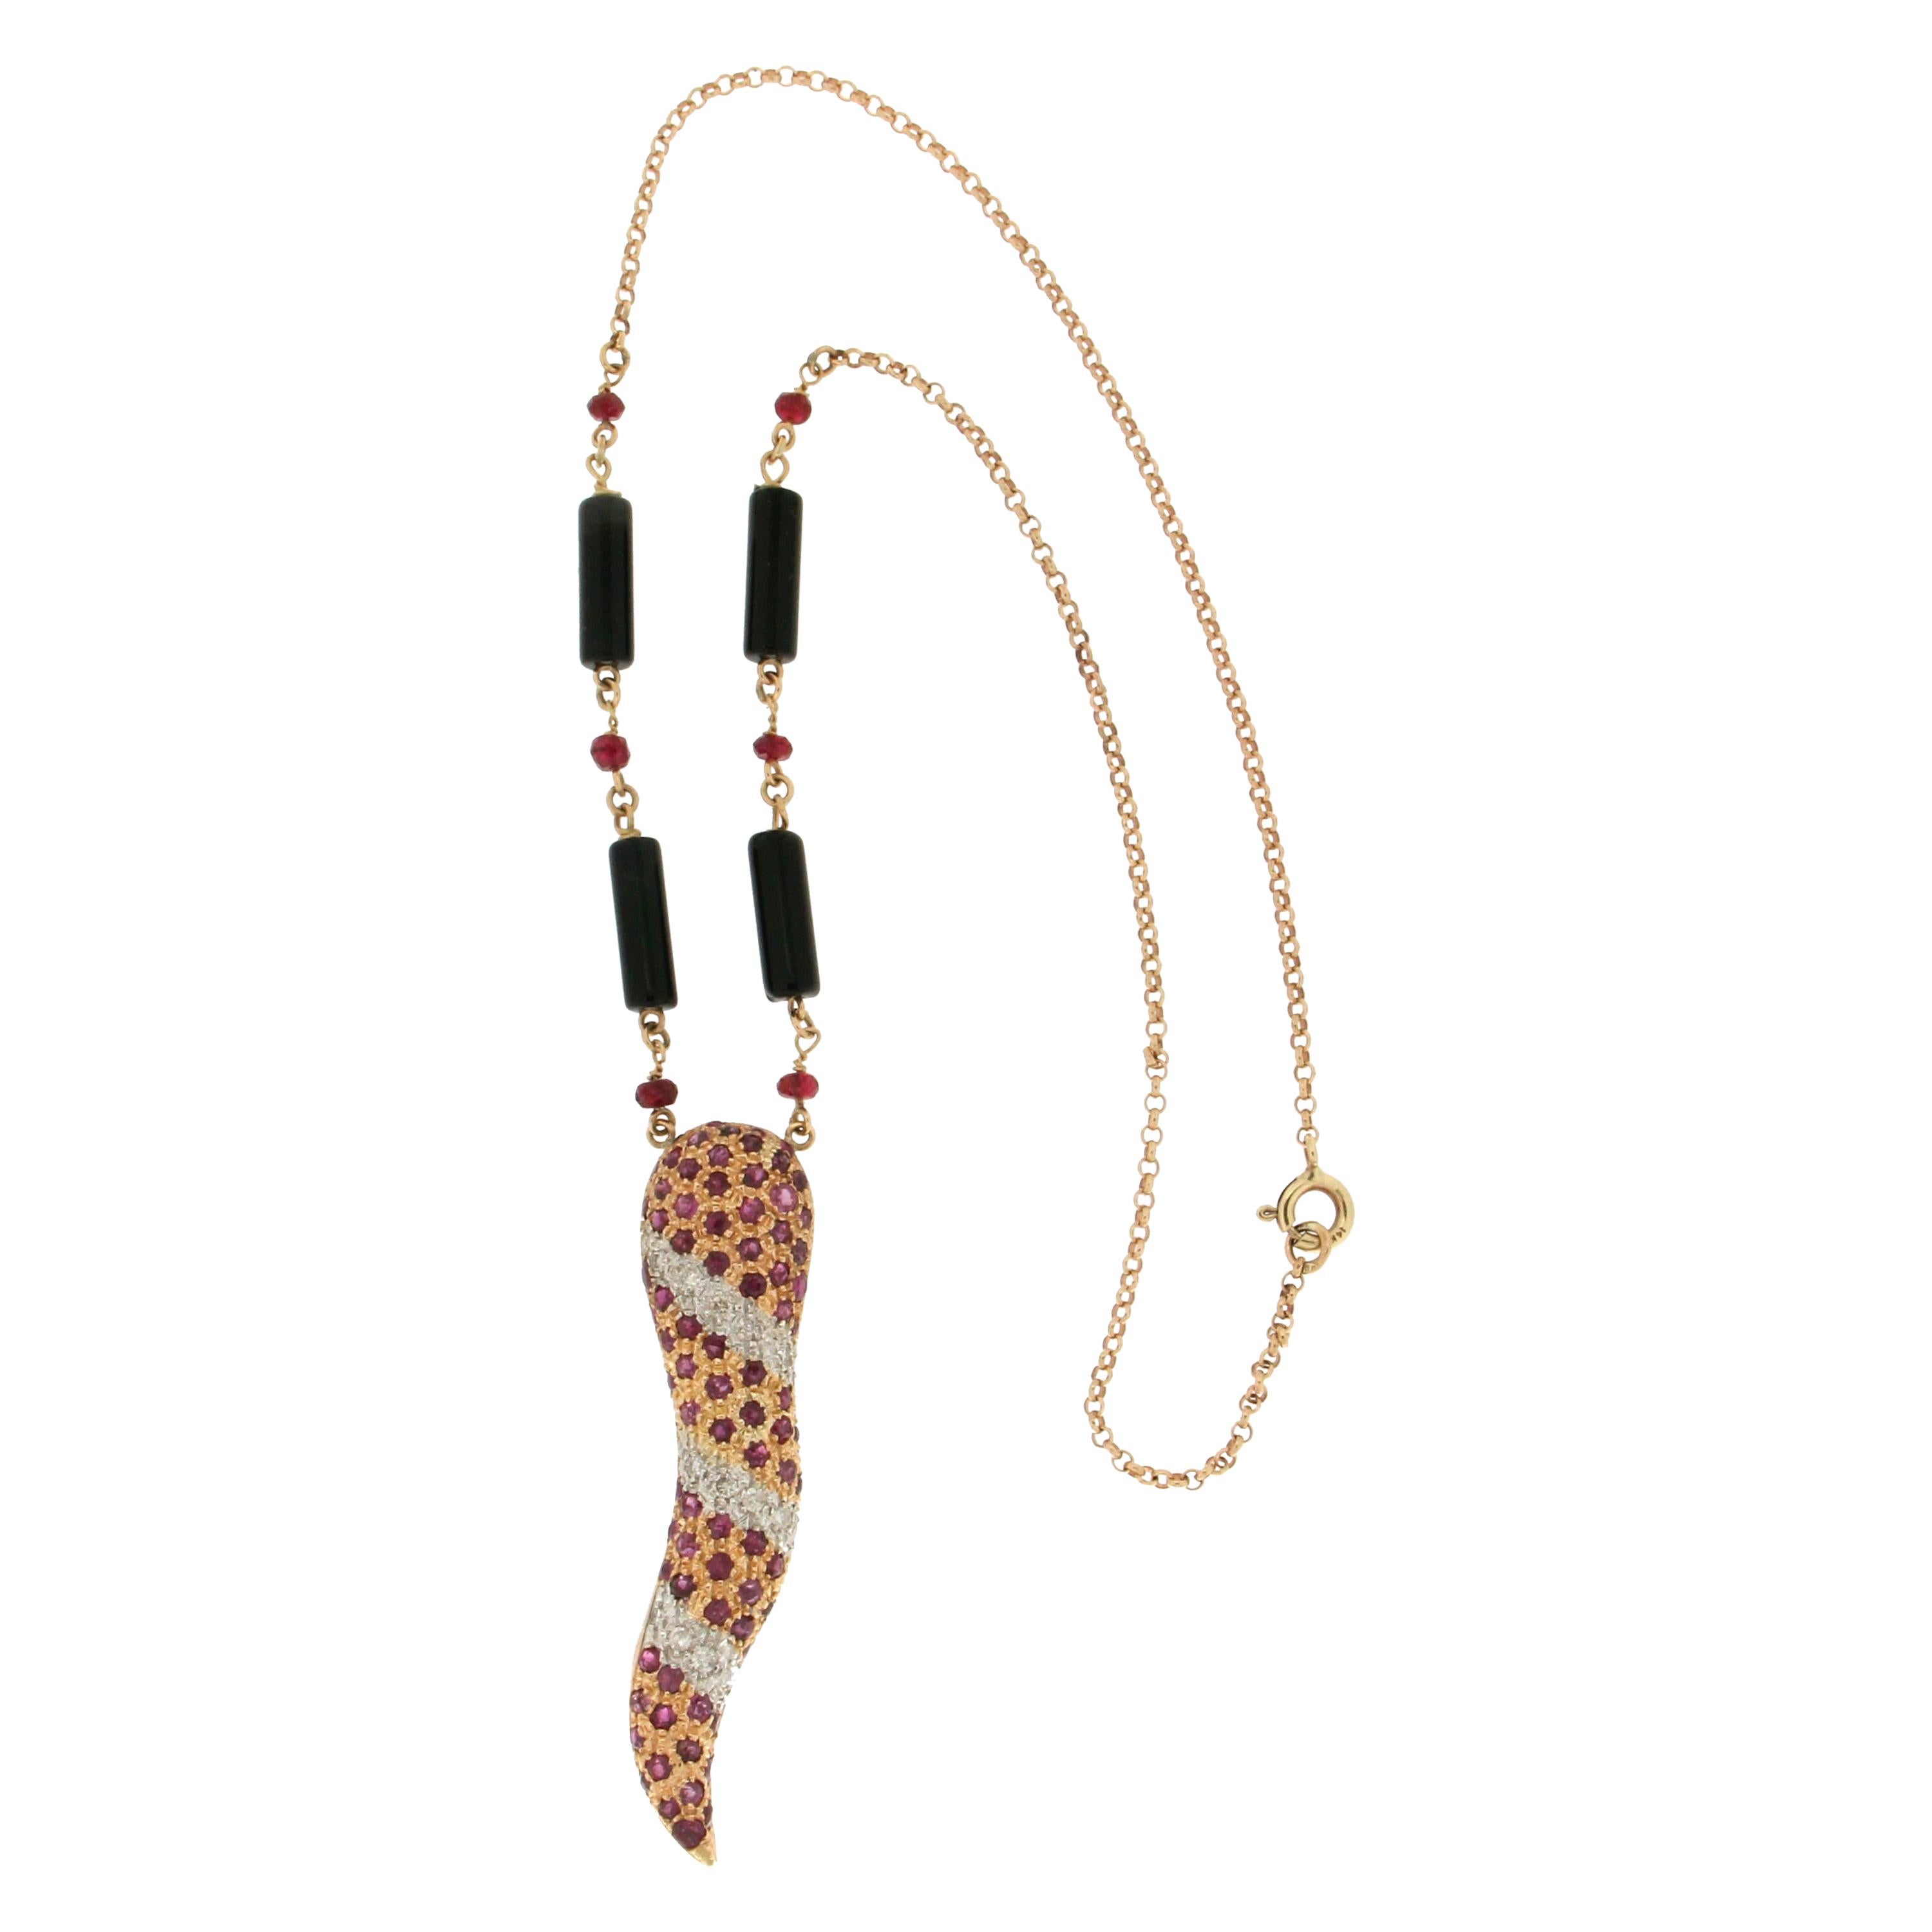 Halskette mit Onyx-Anhänger, Rubin 18 Karat Gold Diamanten, handgefertigt